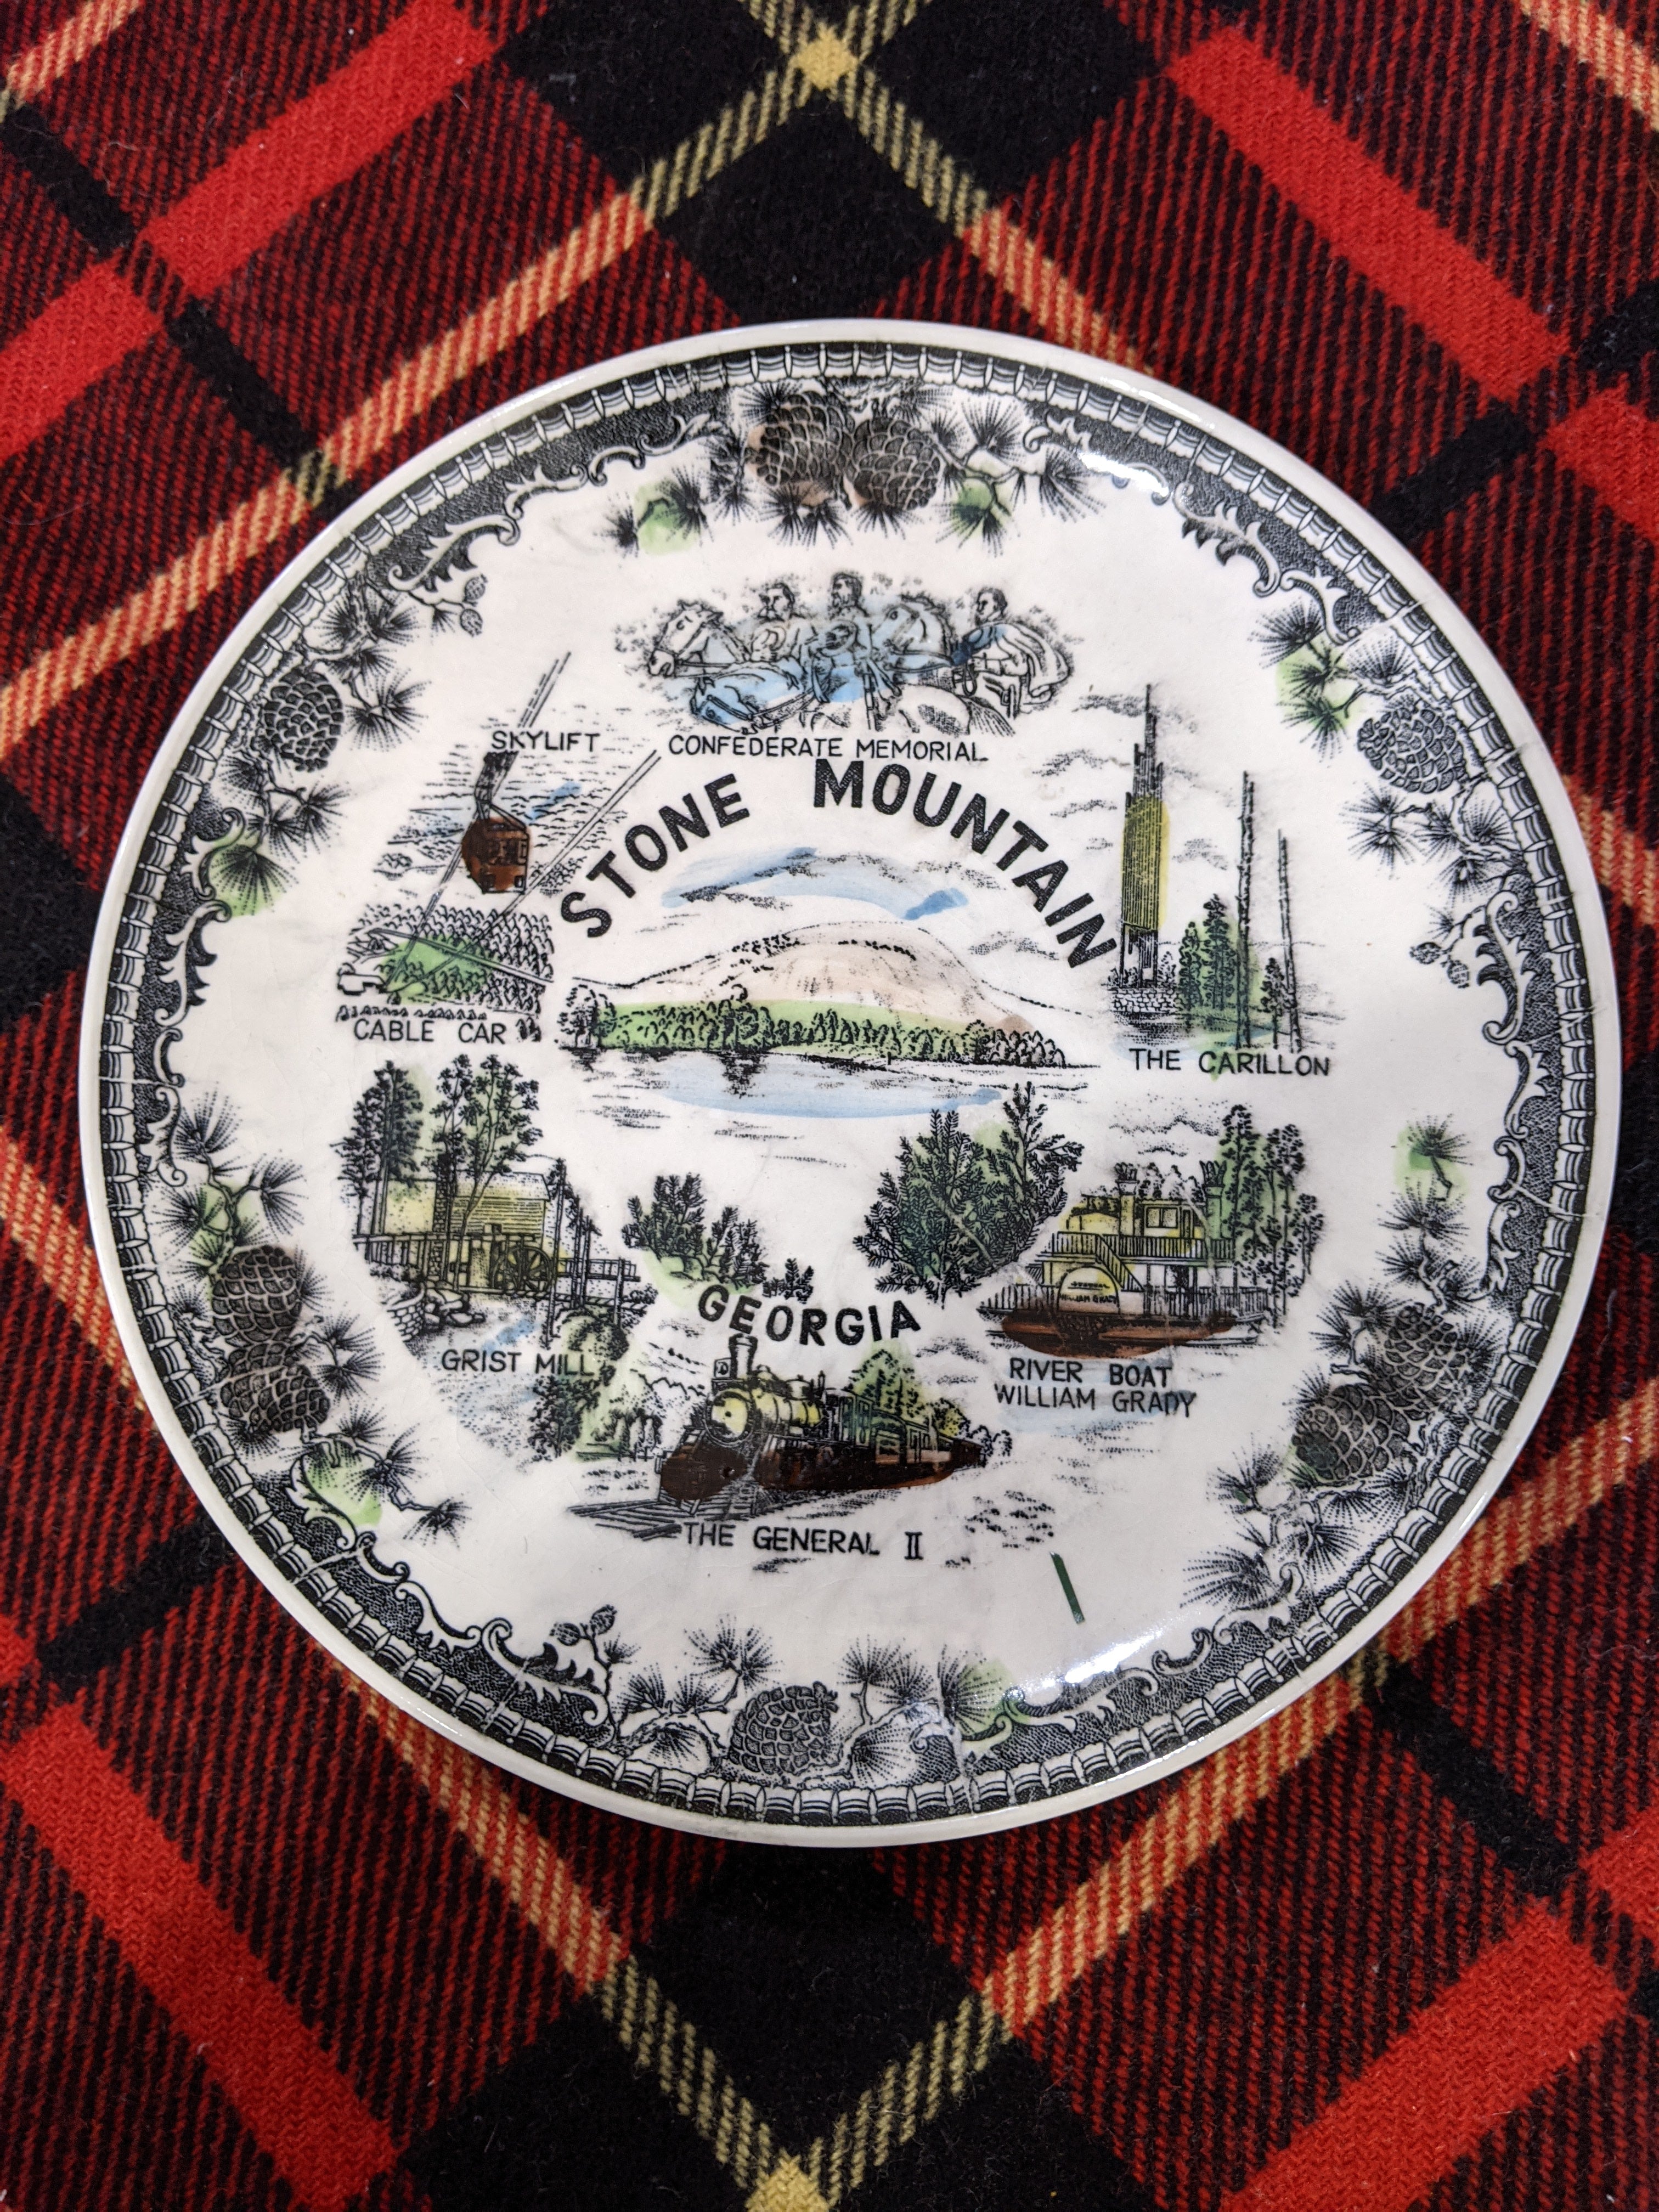 Georgia Stone mountain vintage plate